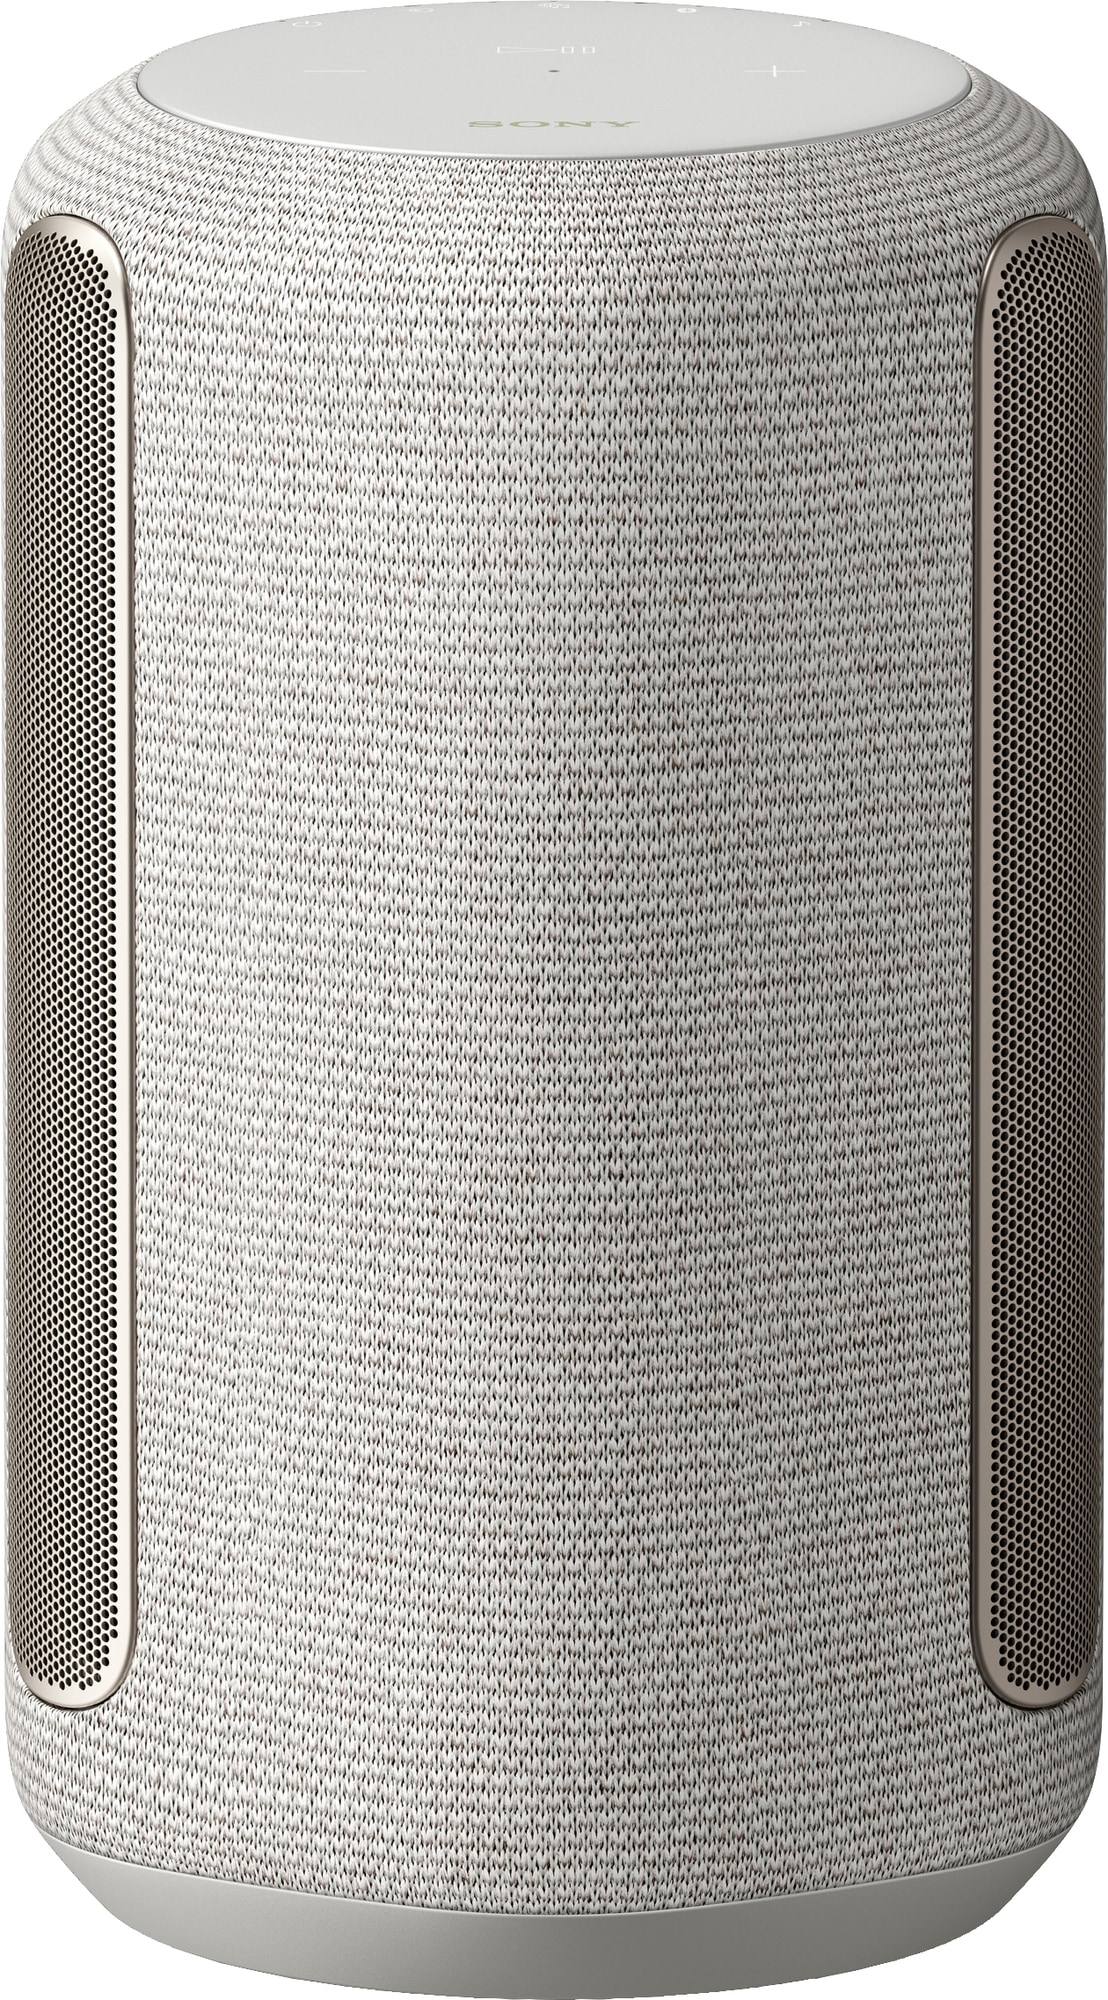 Sony SRS-RA3000 høyttaler (lys grå) - WiFi-høyttaler & Multiroom - Elkjøp